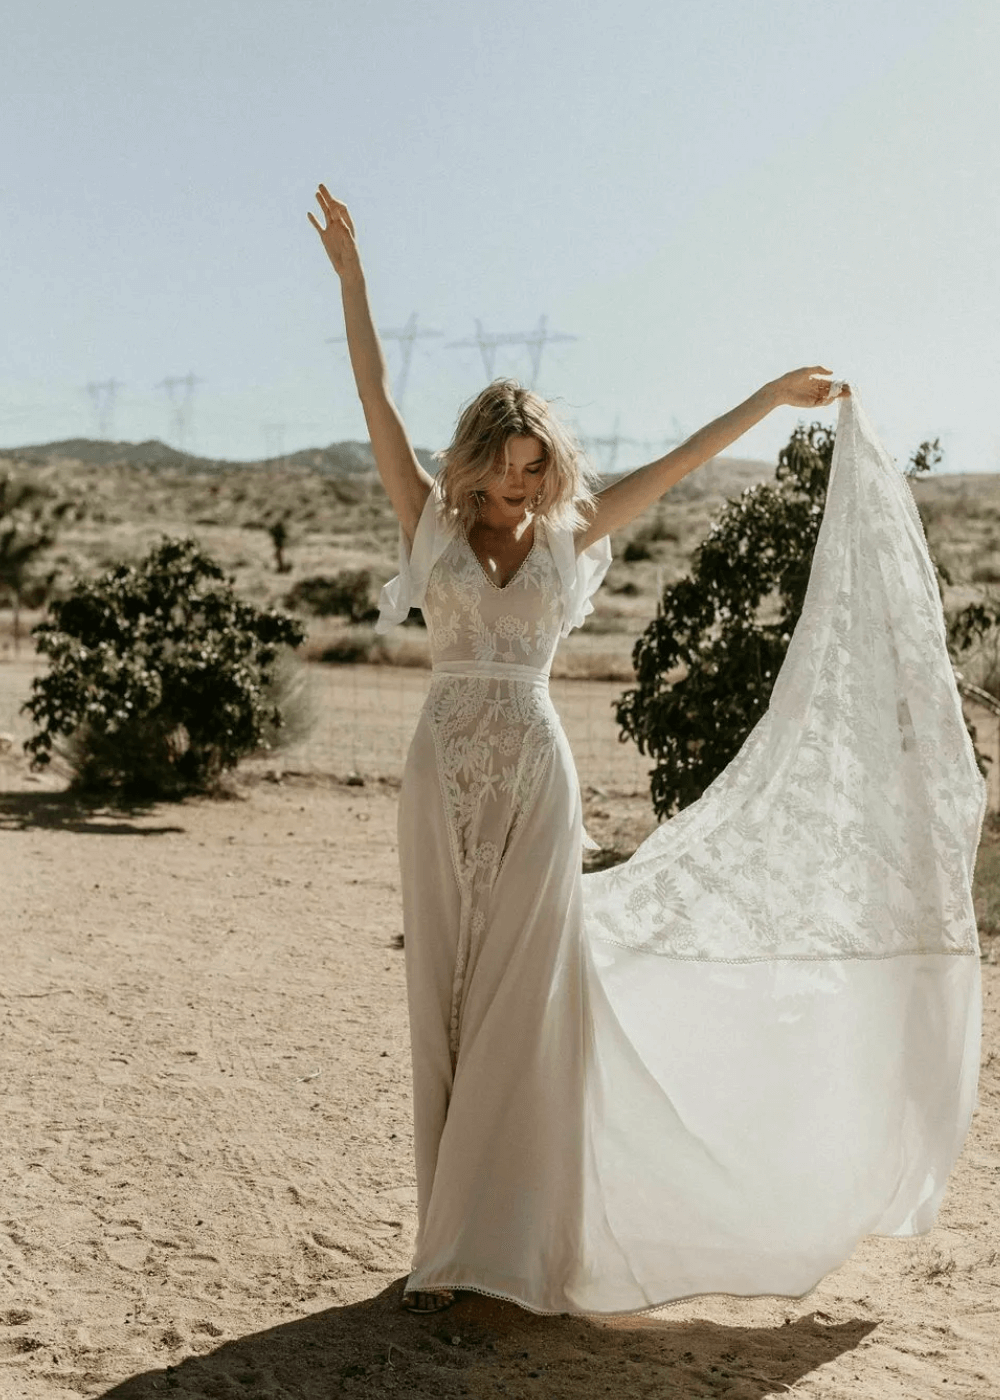 Hayley Romantic Bohemian Wedding Dress - vestido de noiva longo rendado e bordado - vestidos de noiva - outono - mulher em pé com os braços para cima - https://stealthelook.com.br